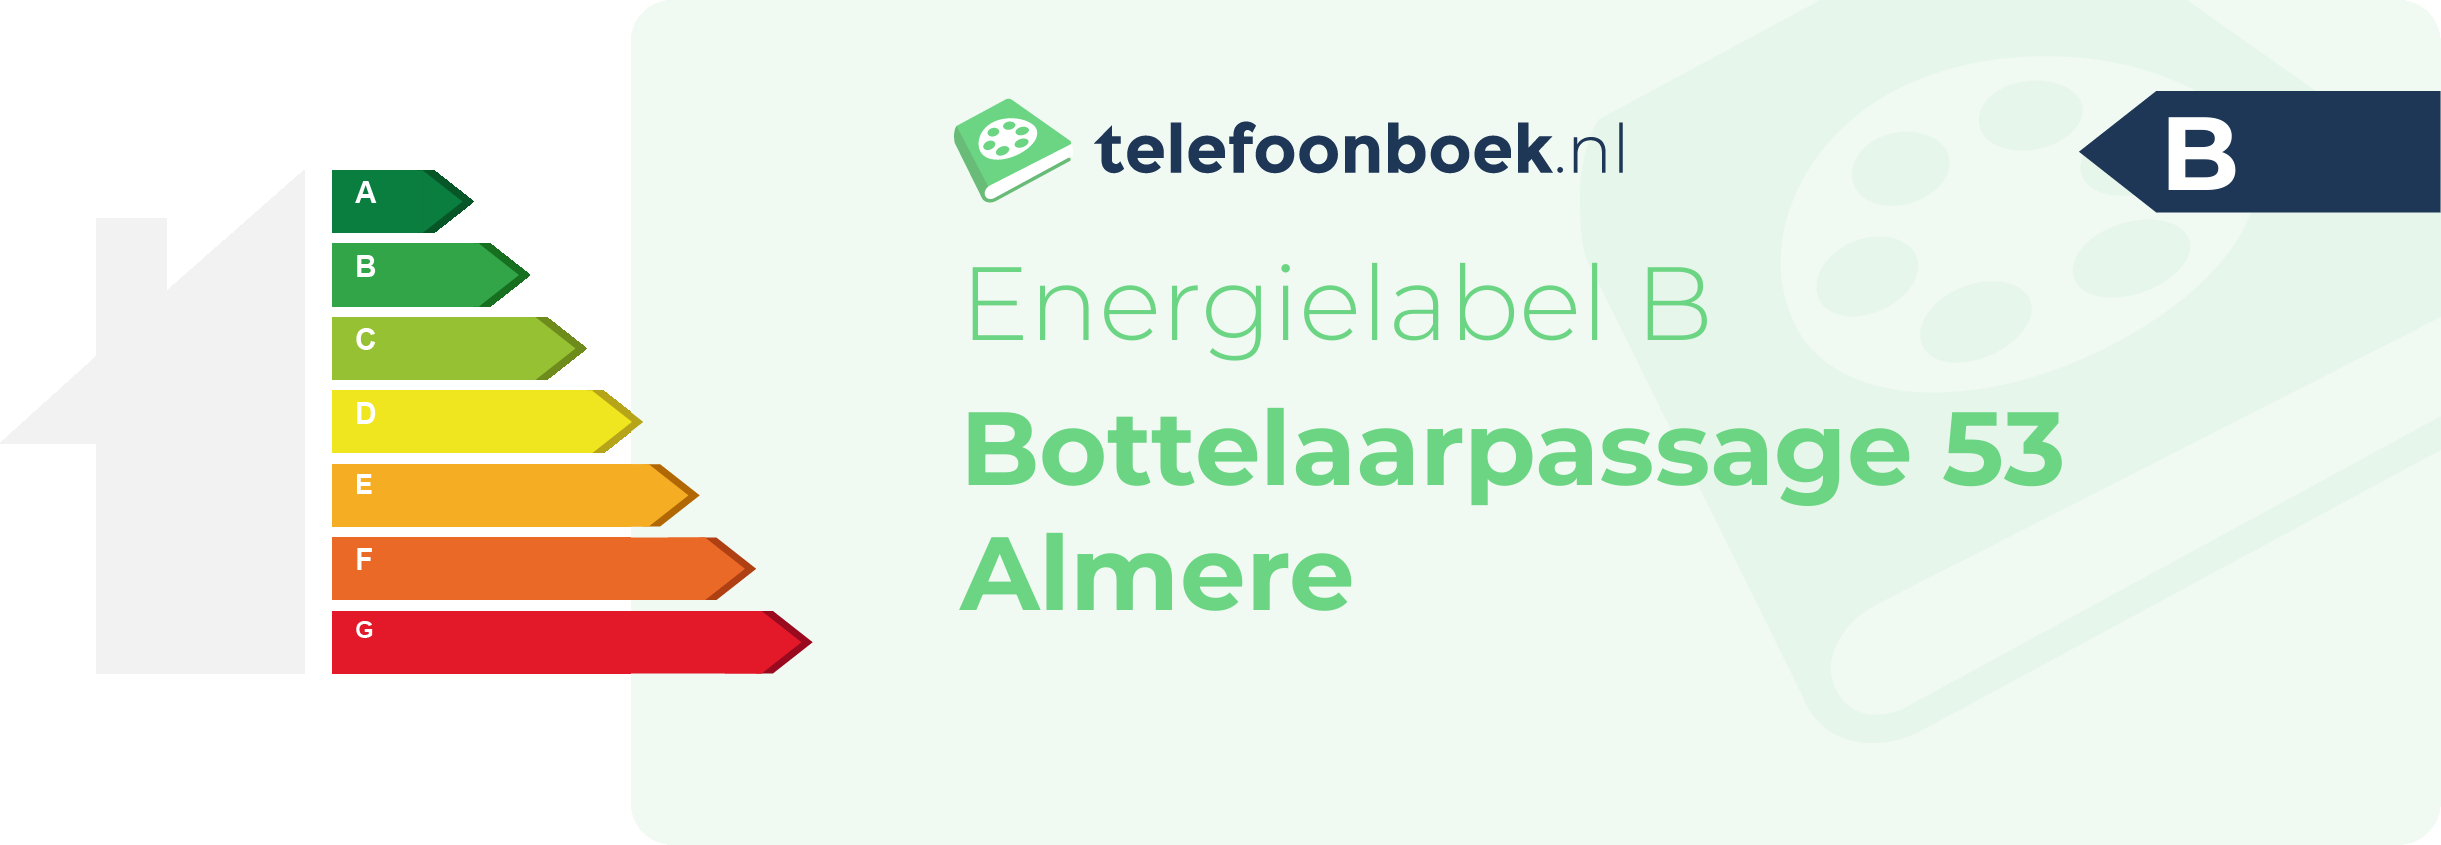 Energielabel Bottelaarpassage 53 Almere